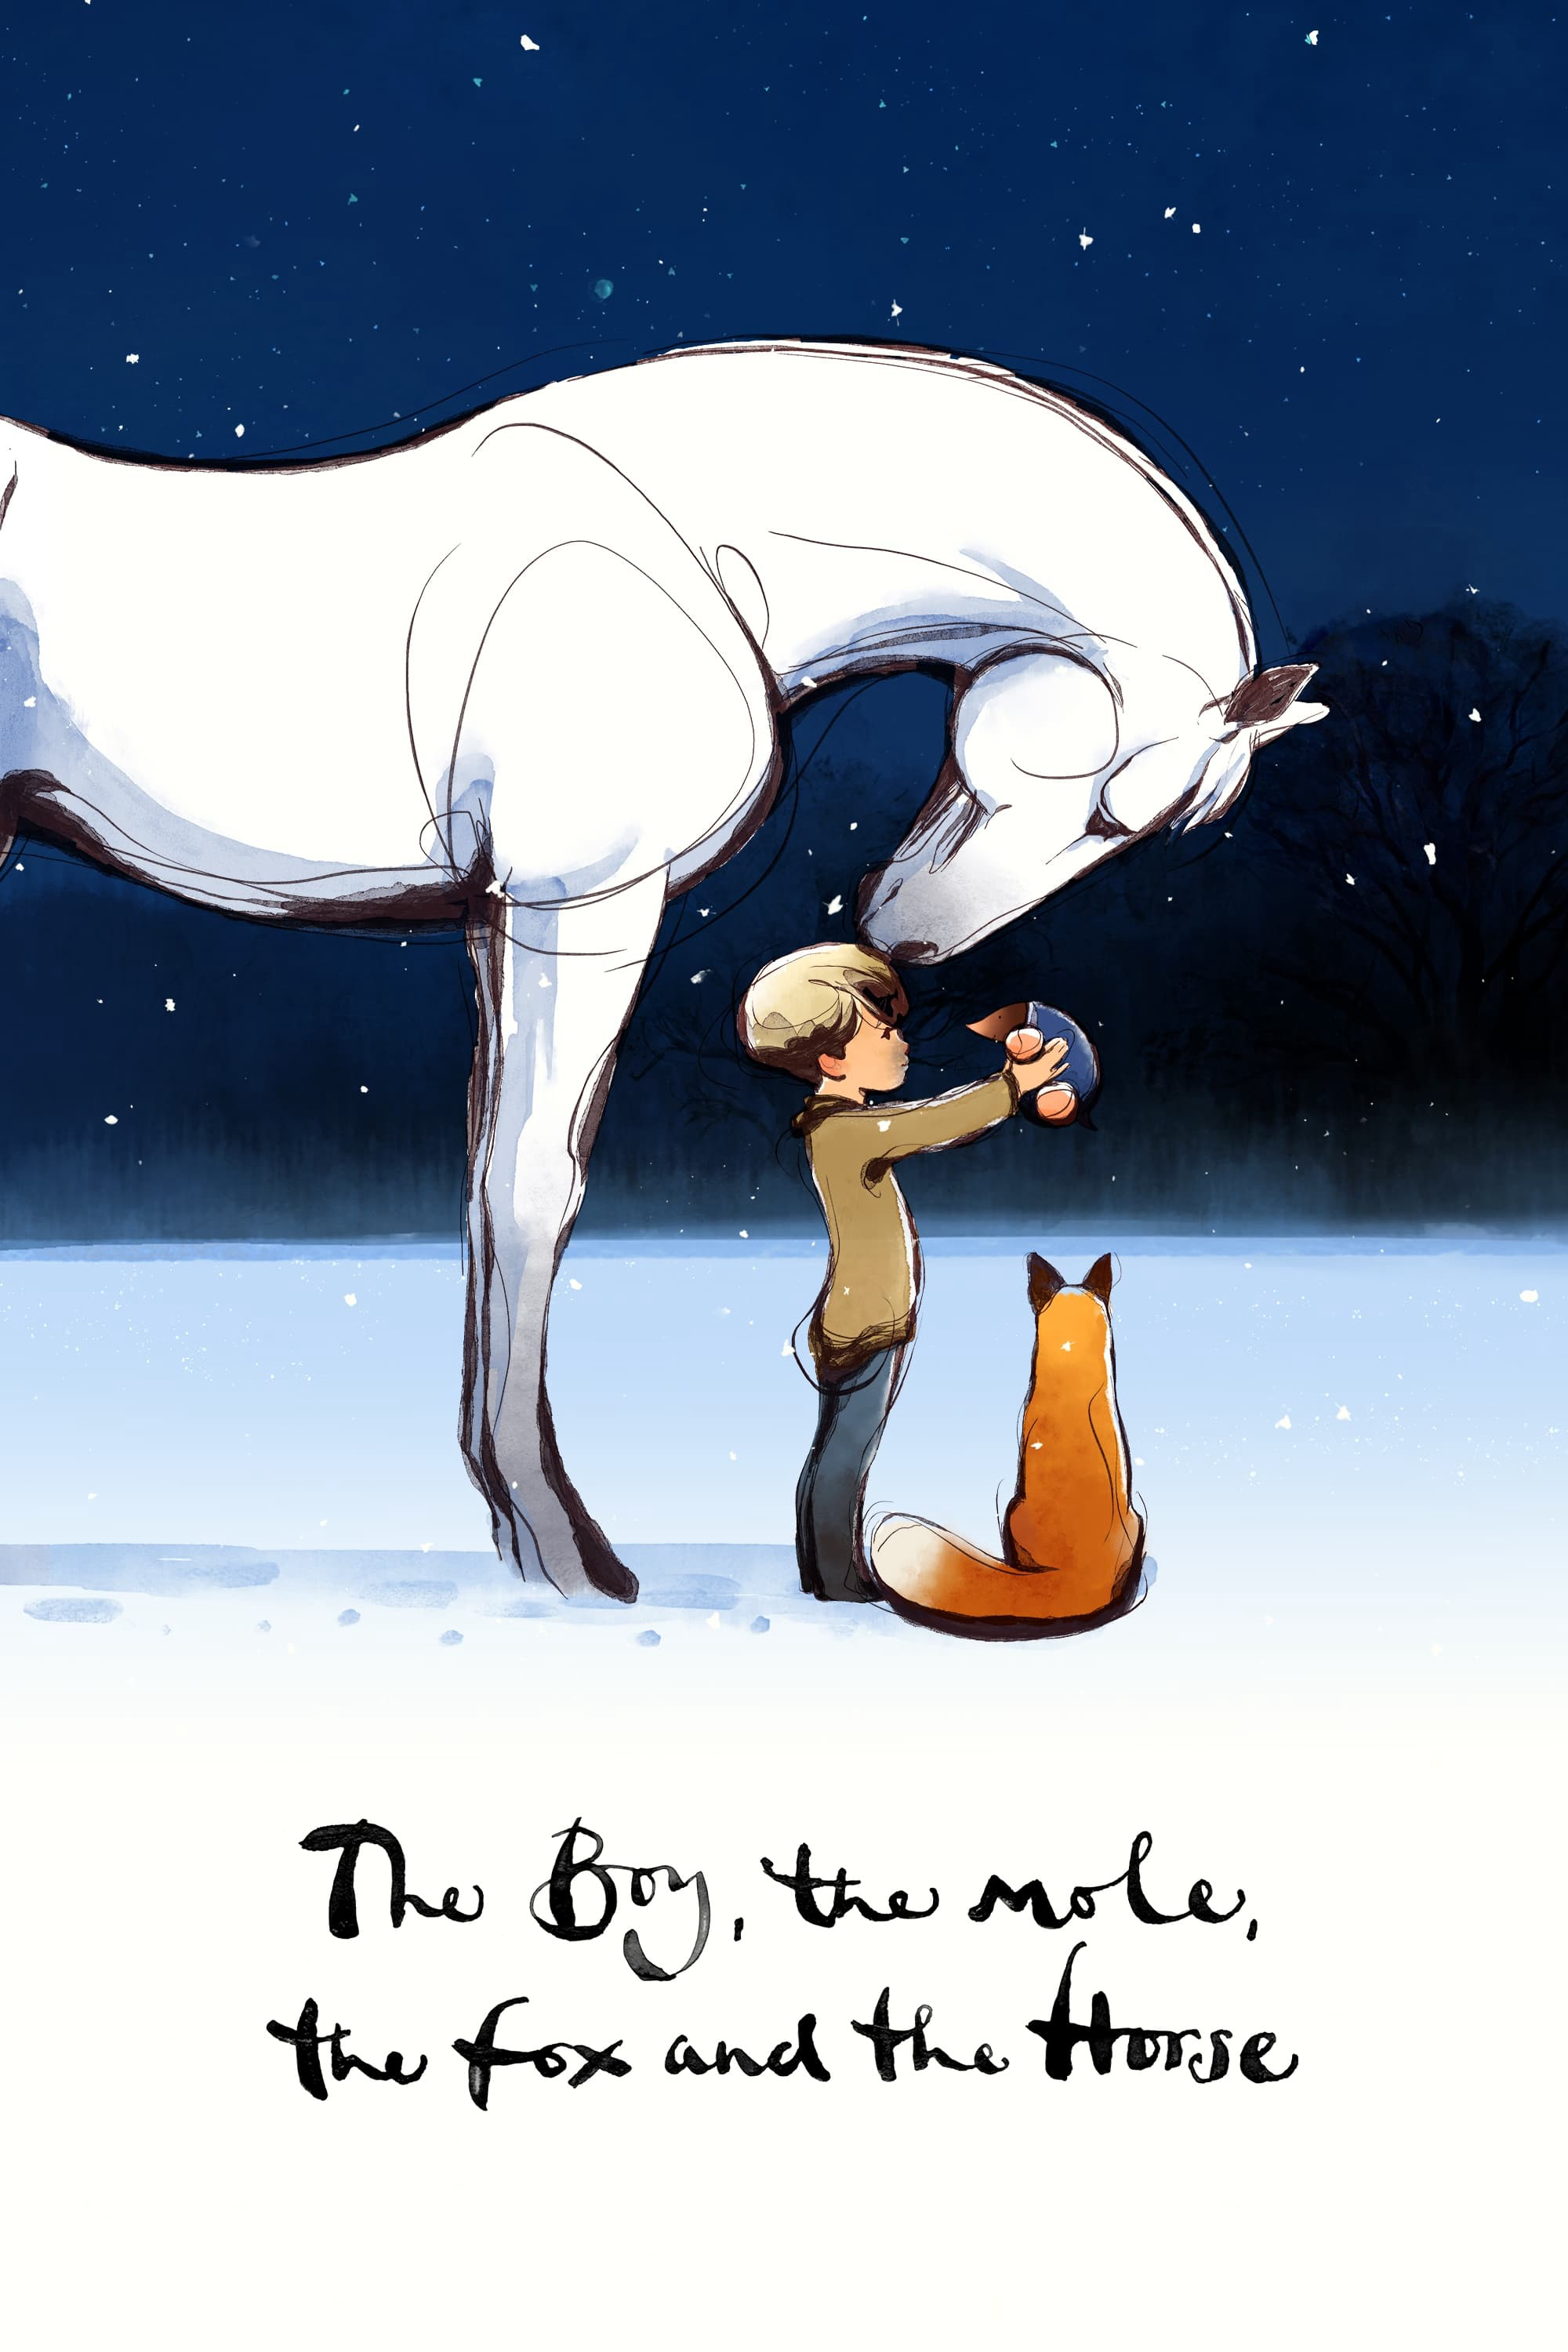 Xem Phim Cậu bé, Chuột chũi, Cáo và Ngựa (The Boy, the Mole, the Fox and the Horse)